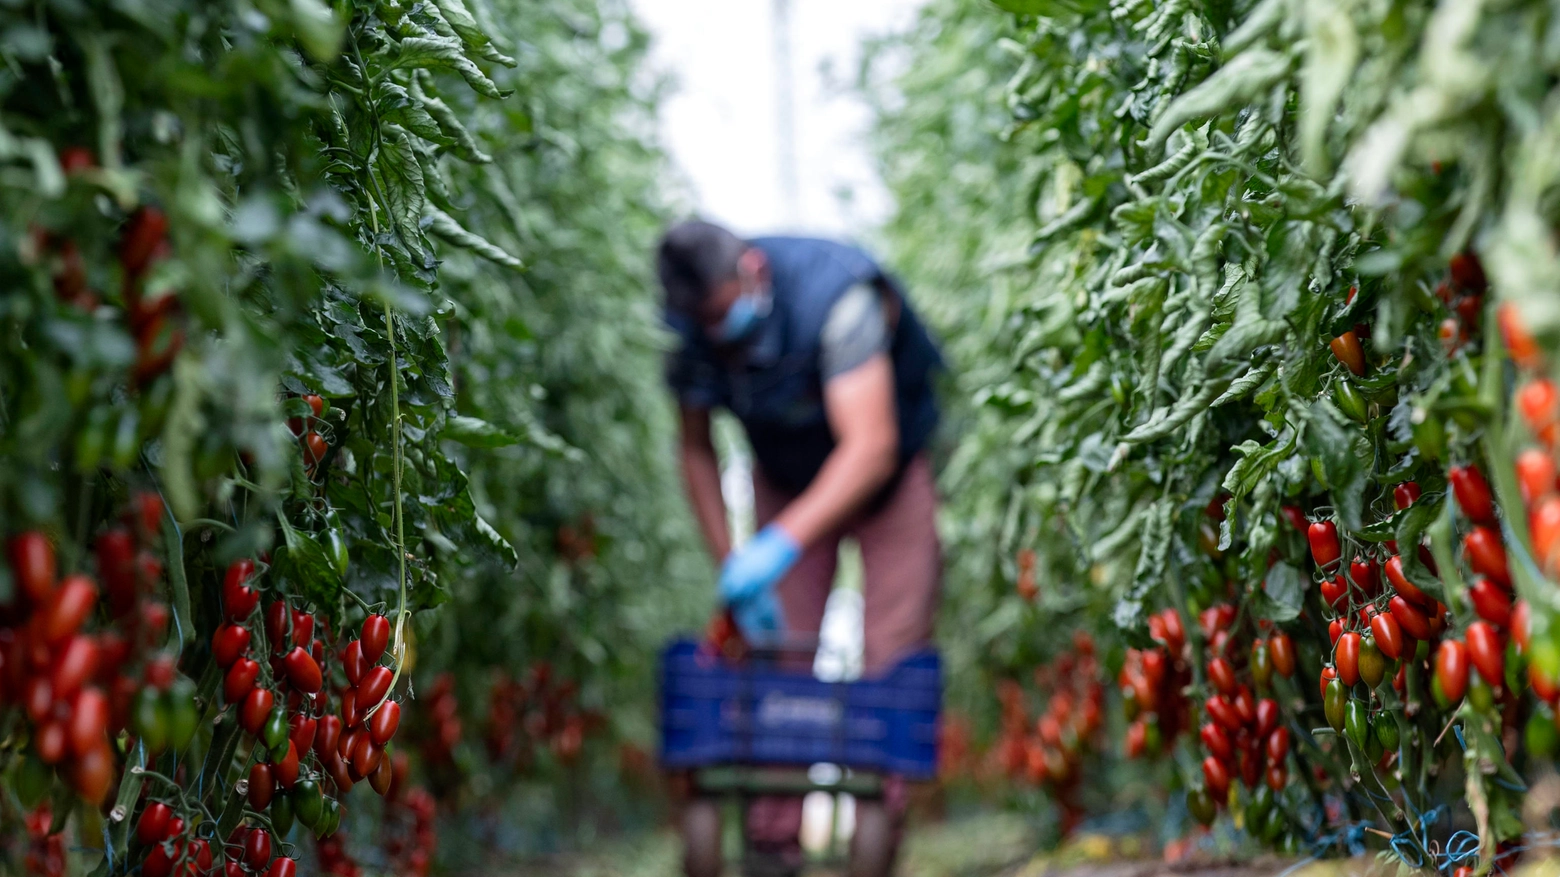 La campagna del pomodoro è il momento più importante dell'anno per Mutti: in soli 70 giorni l'azienda trasforma tutta la materia prima proveniente dalle oltre 800 famiglie di agricoltori italiane